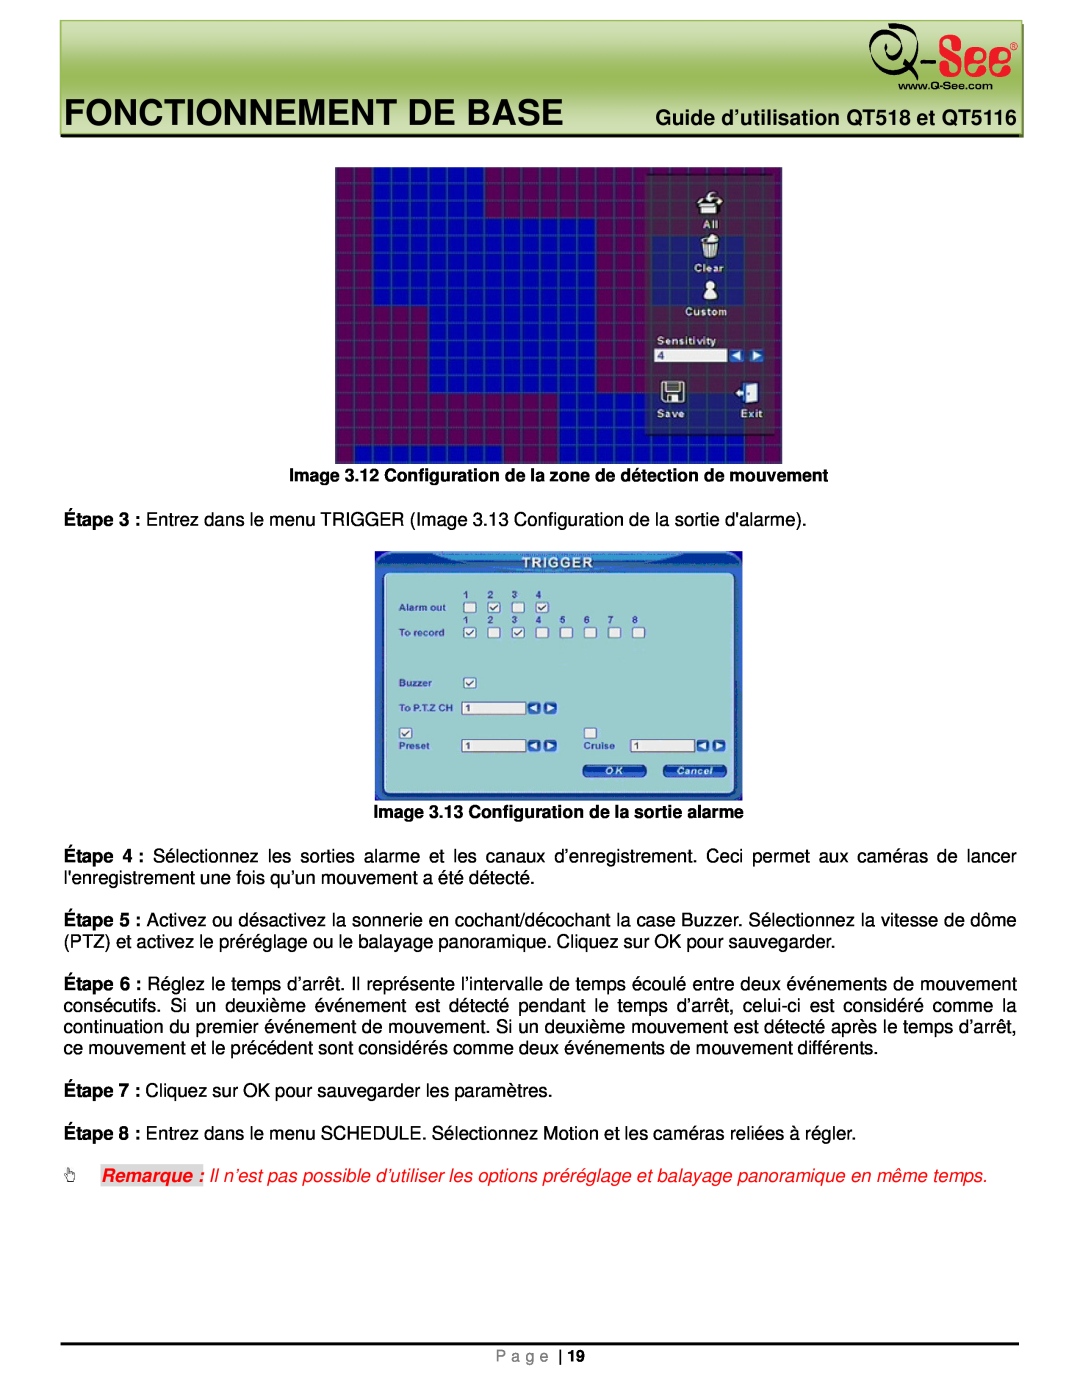 Q-See manual Fonctionnement De Base, Guide d’utilisation QT518 et QT5116, Image 3.13 Configuration de la sortie alarme 